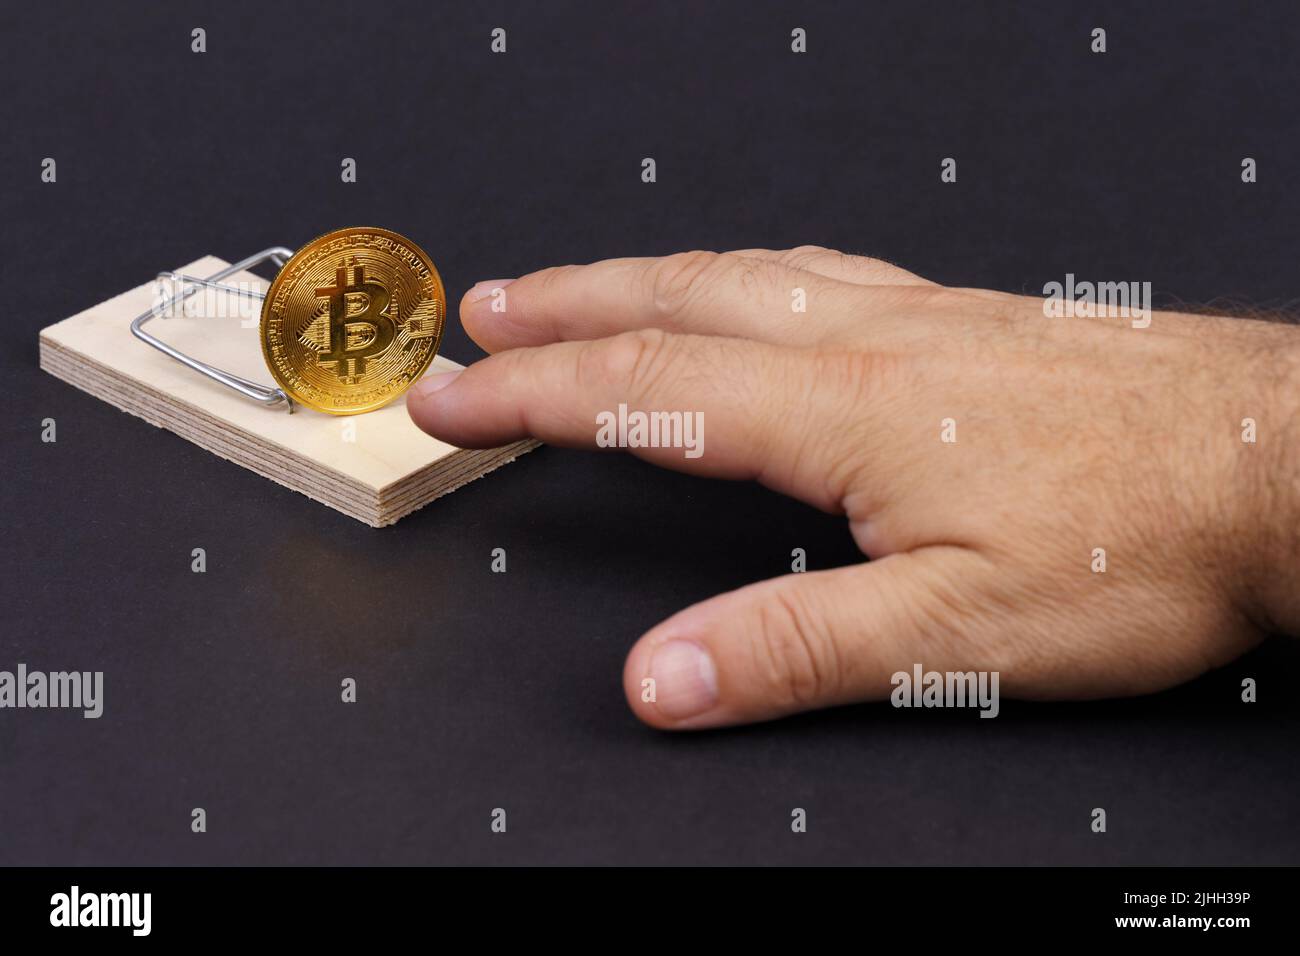 La main atteint pour le bitcoin du mousetrap. Risques et dangers liés à l'investissement dans la crypto-monnaie. Banque D'Images